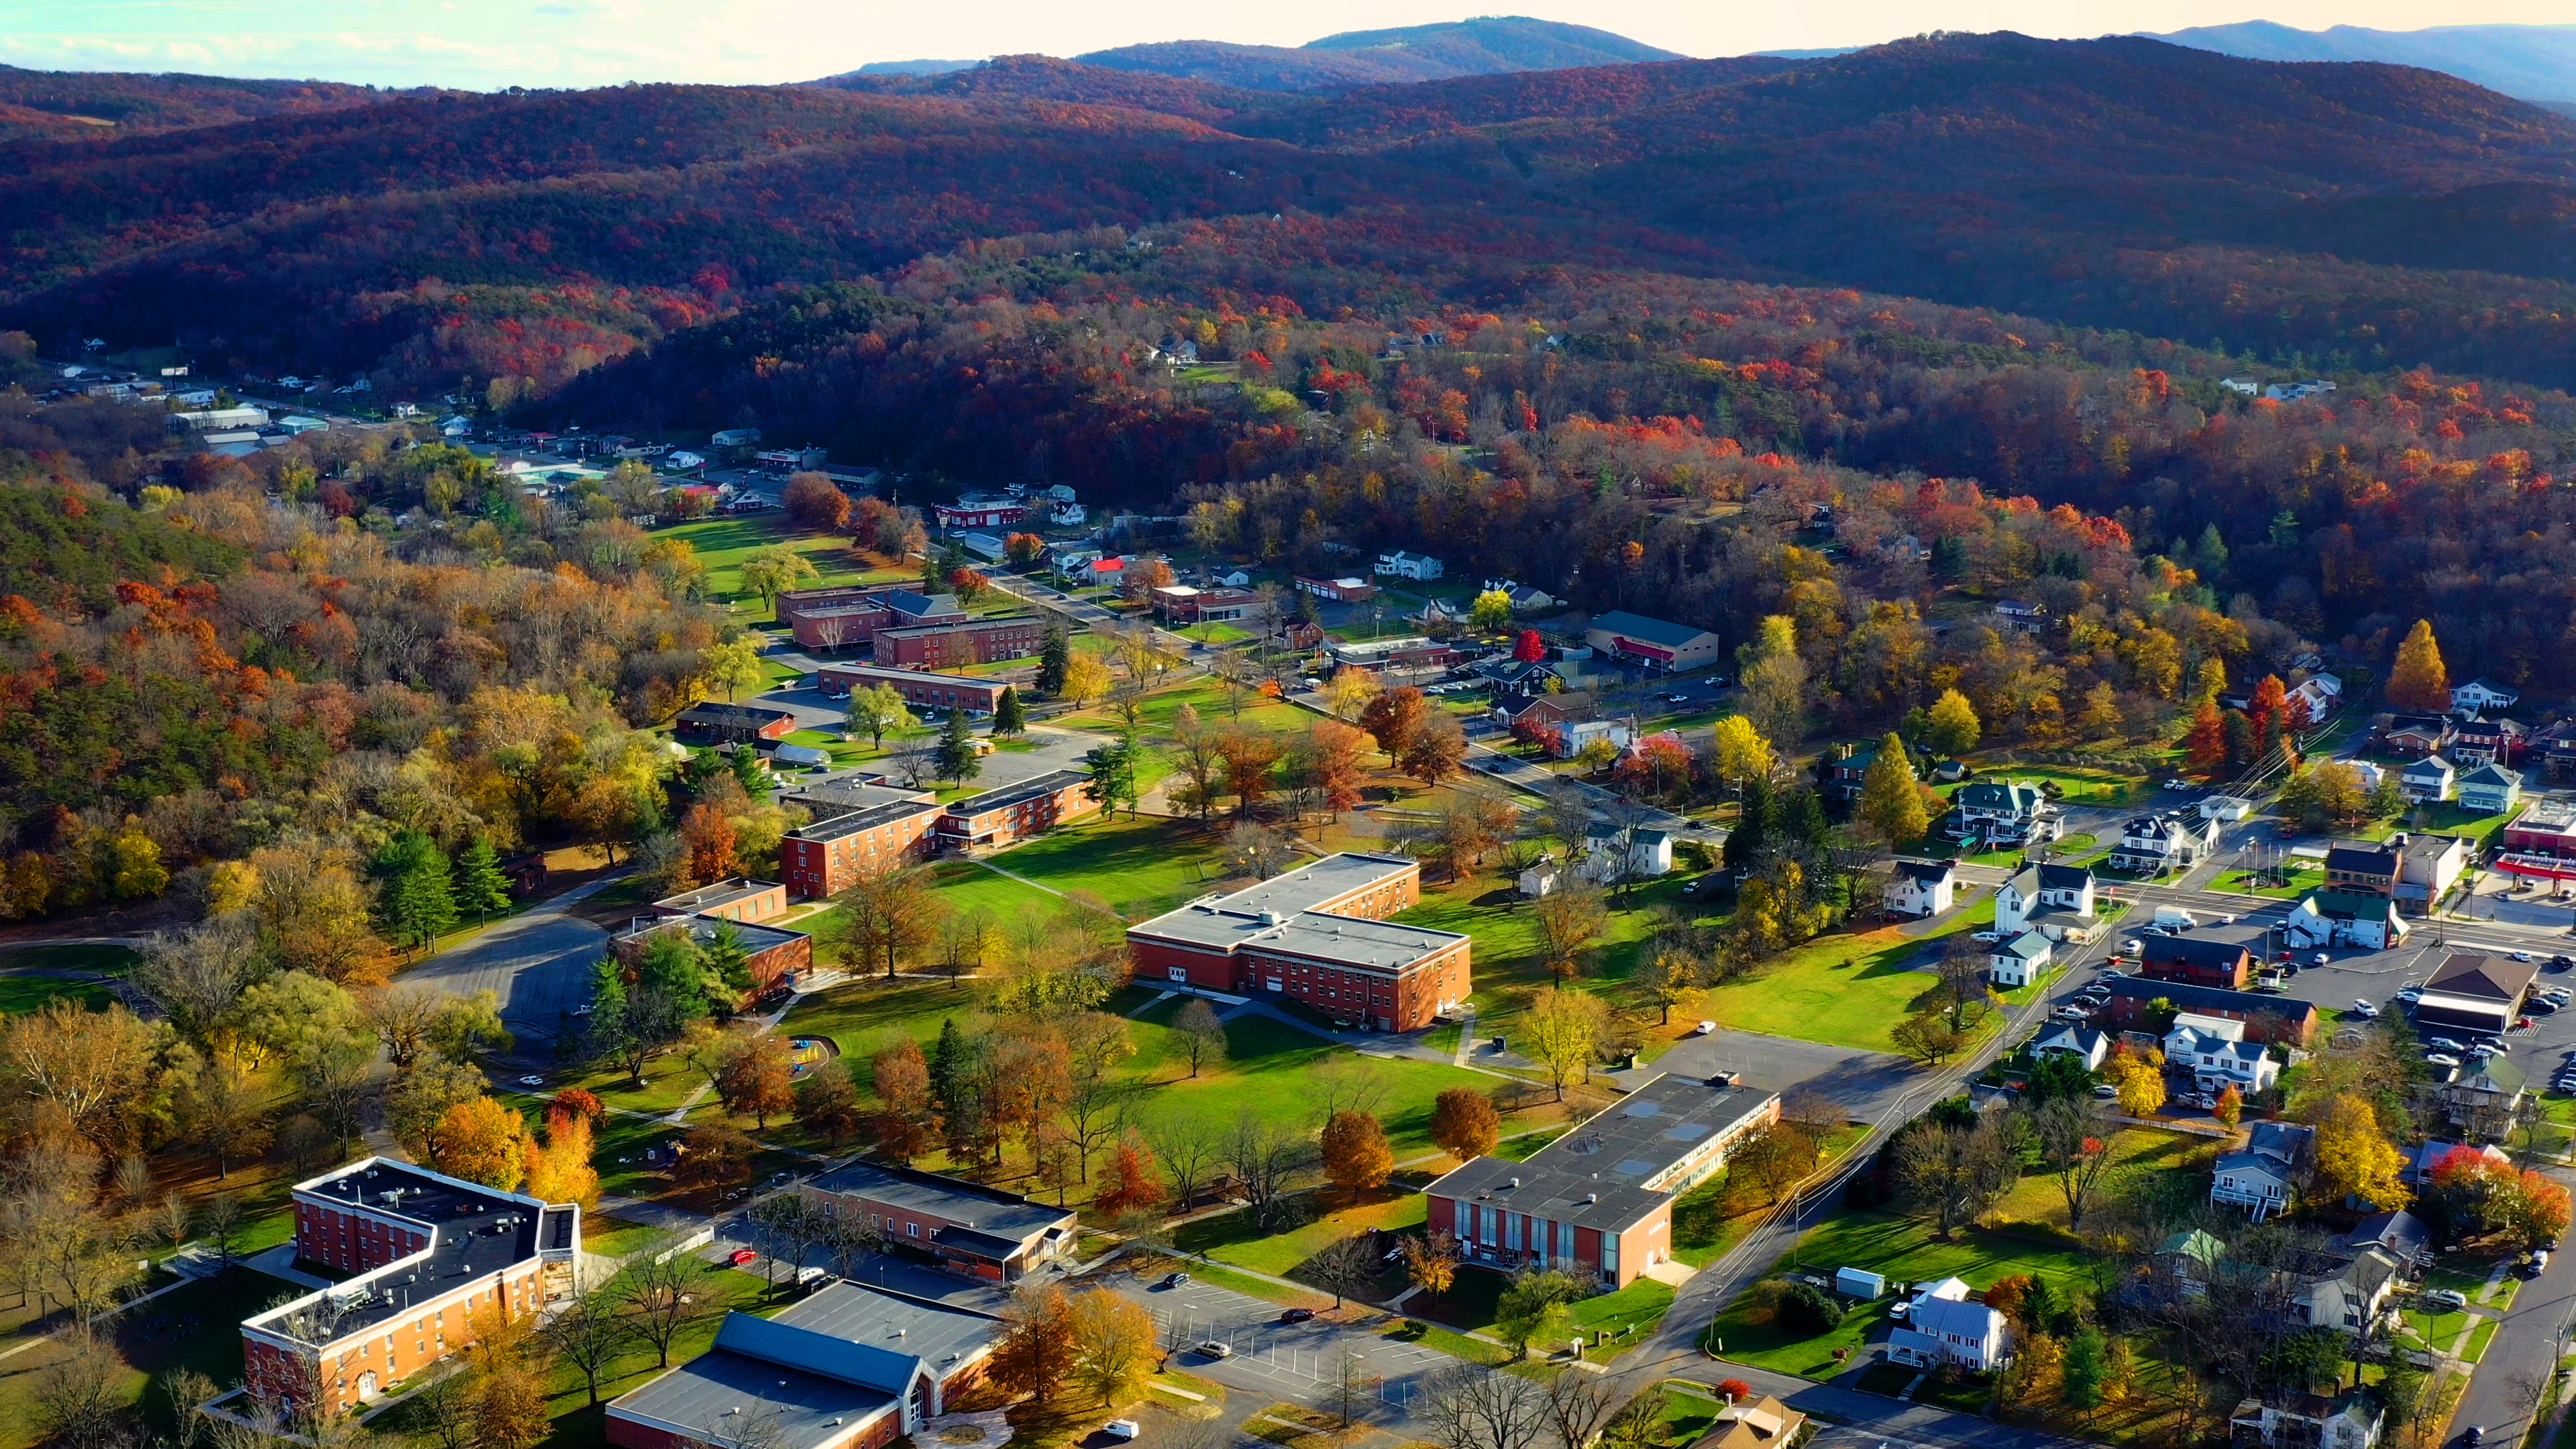 An aerial view of WVSDB in the Fall season